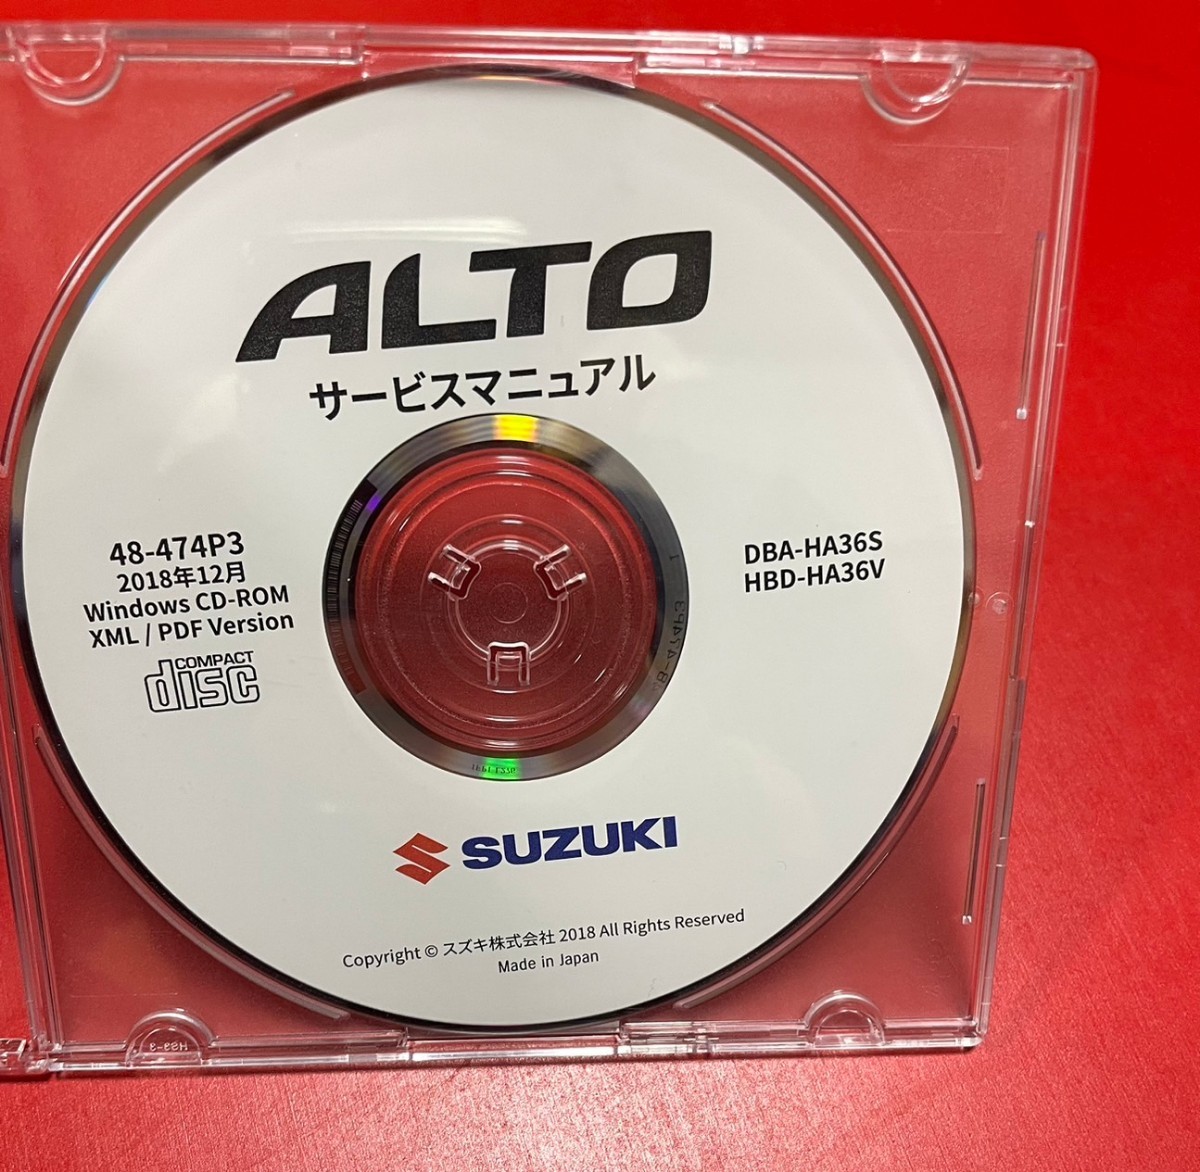 純正 SUZUKI ALTO サービスマニュアル DBA-HA36S HBD-HA36V 2018年12月 48-474P3 アルトワークス CD-ROM スズキ_画像1